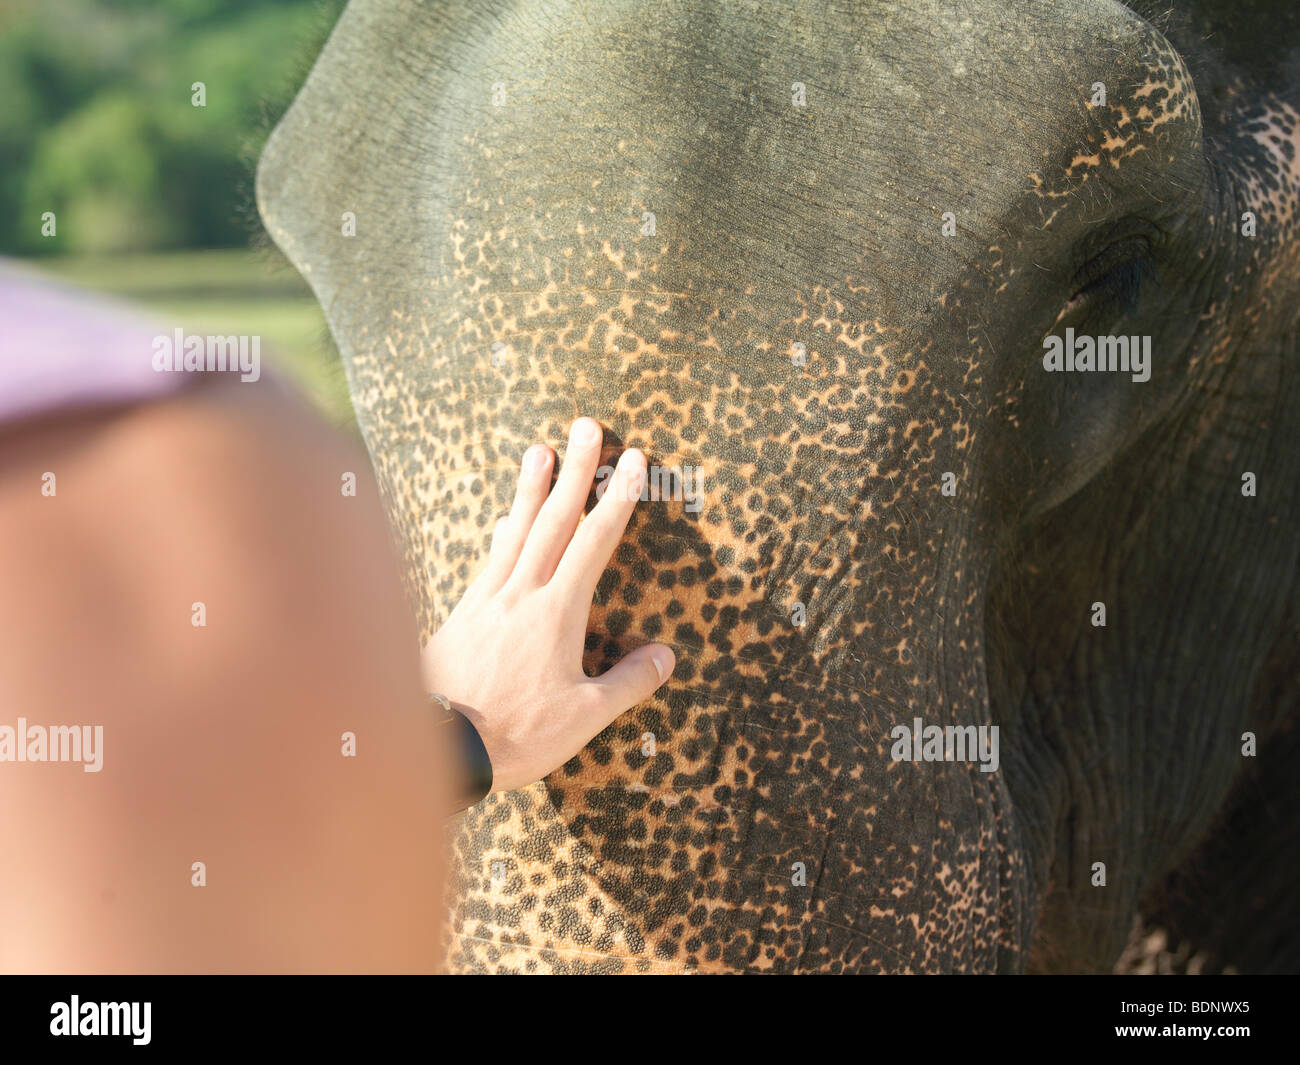 Jeune femme caressant l'éléphant, close-up, vue arrière Banque D'Images